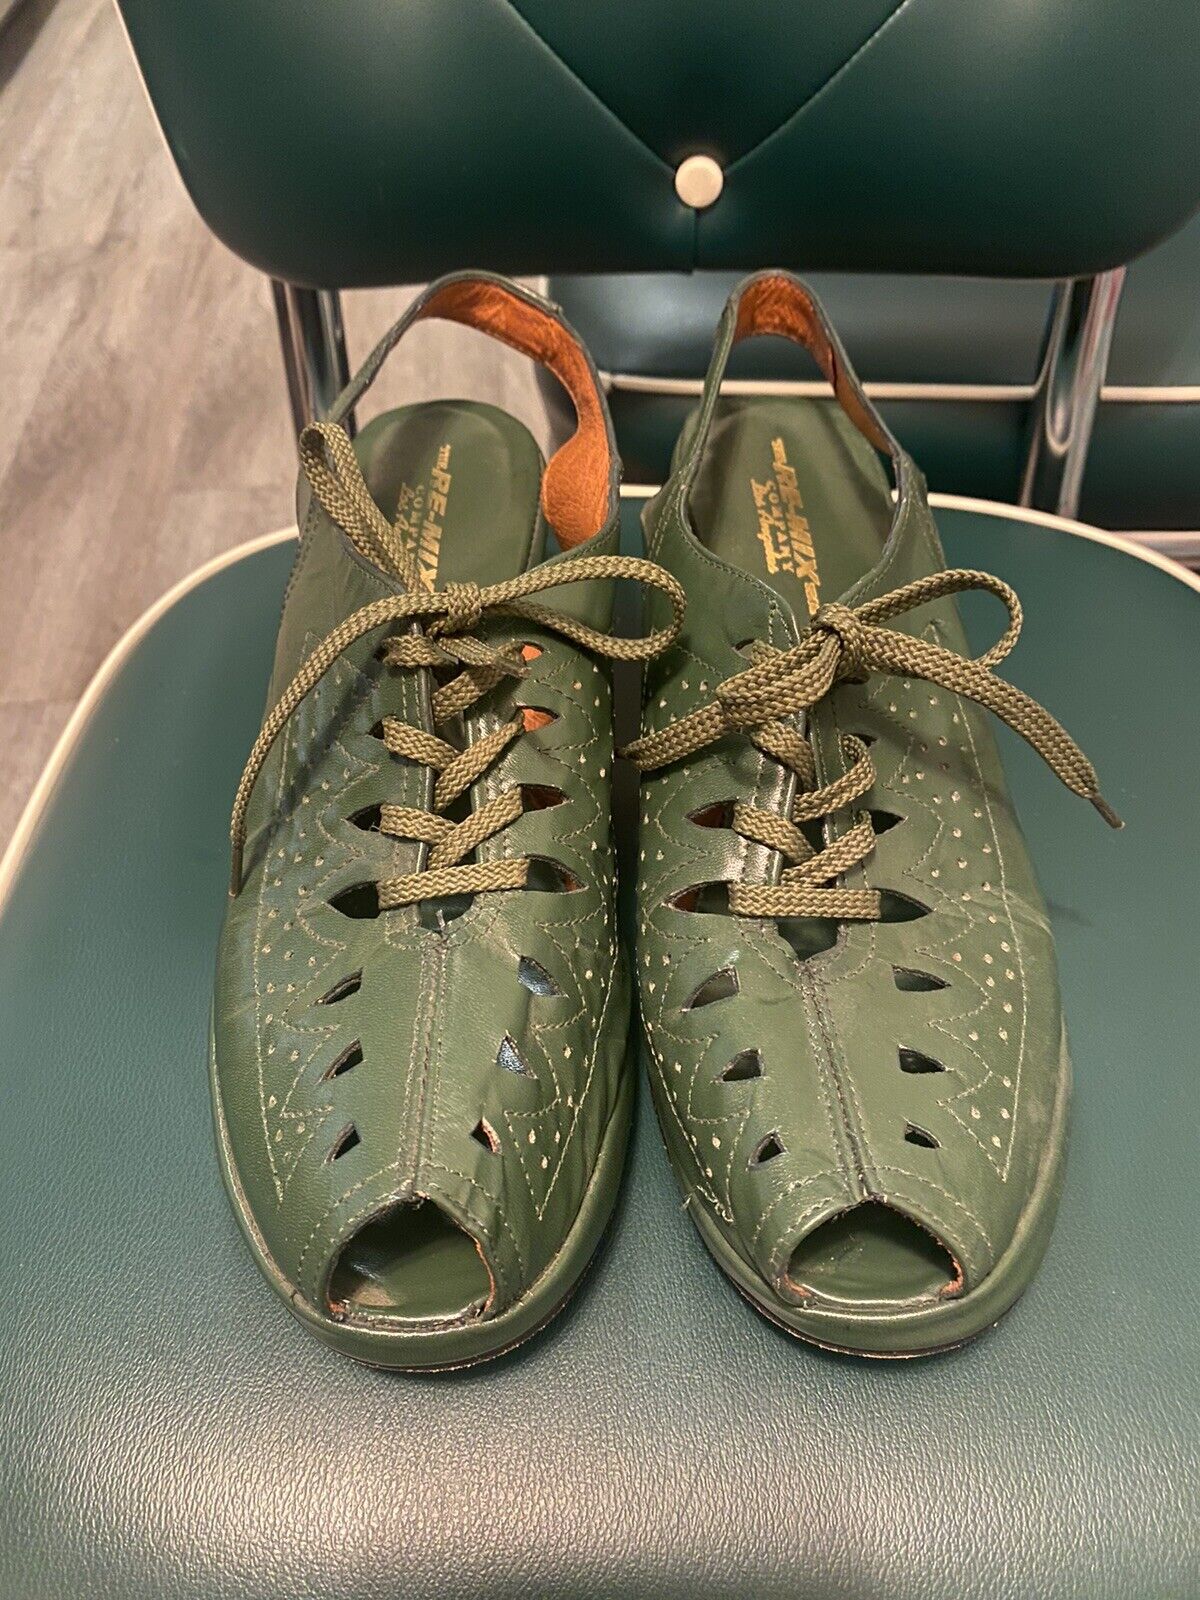 Re-mix Vintage Shoes 1930s 1940s Shoes Size 10